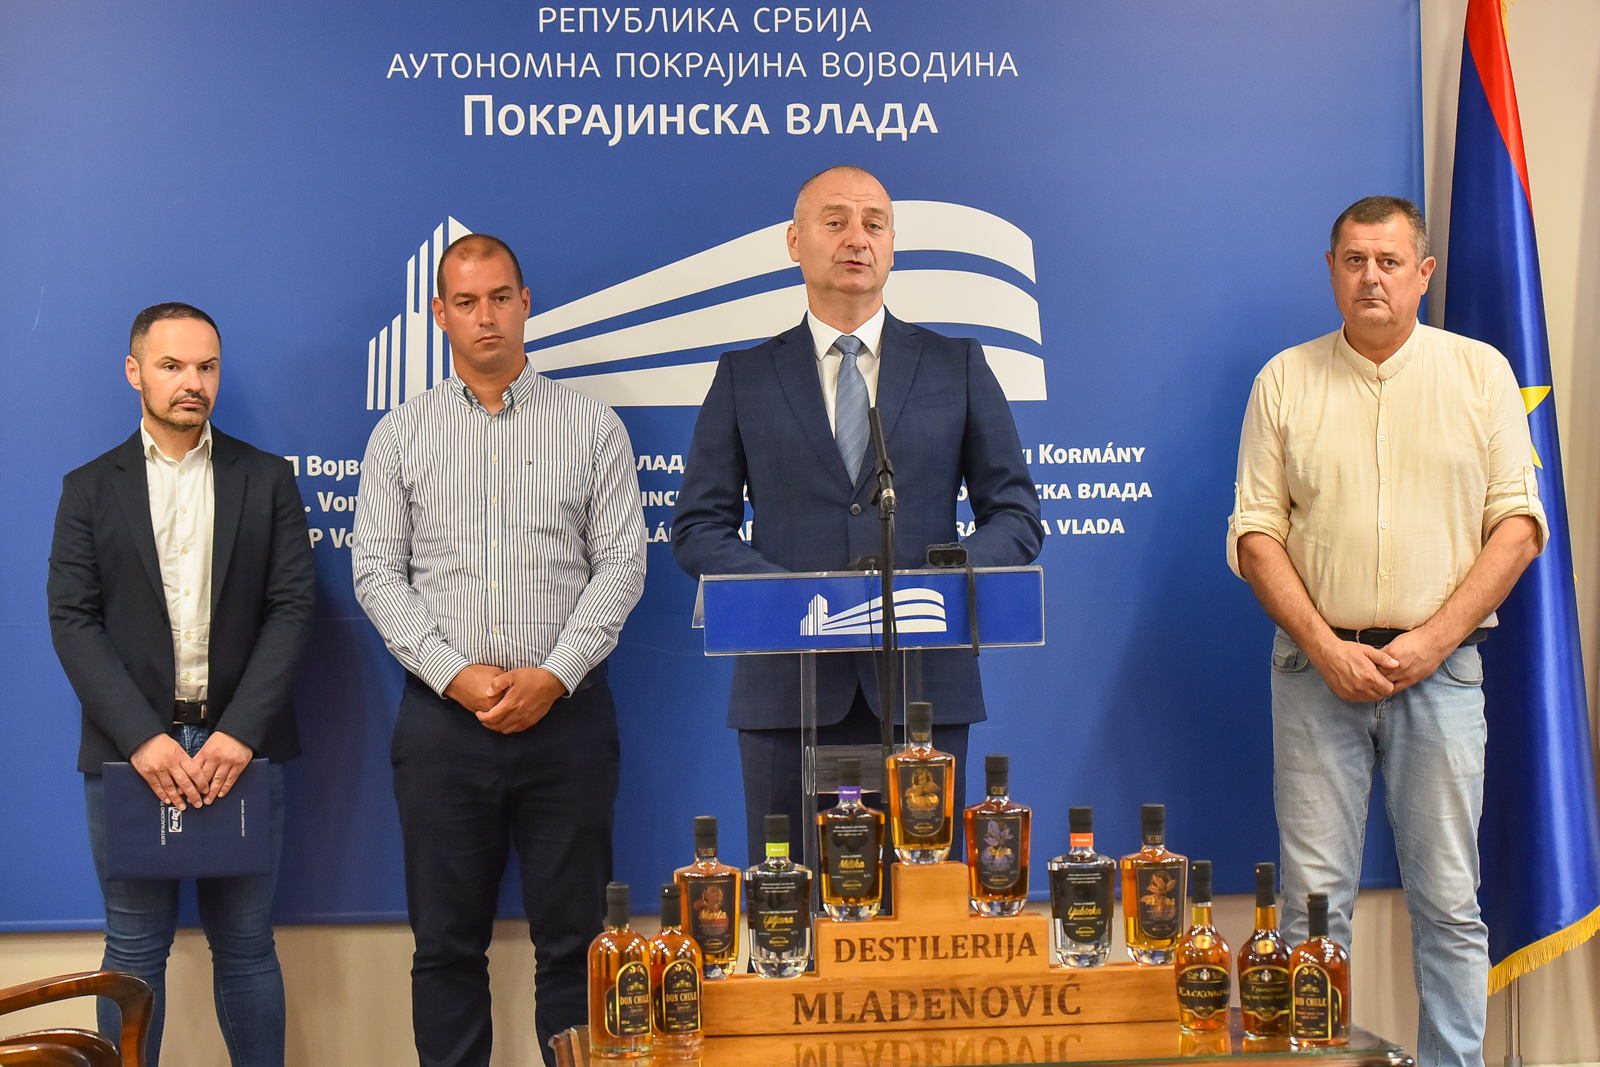 Најављен нови конкурс за сертификацију и стандардизацију произвођача јаких алкохолних пића у Војводини